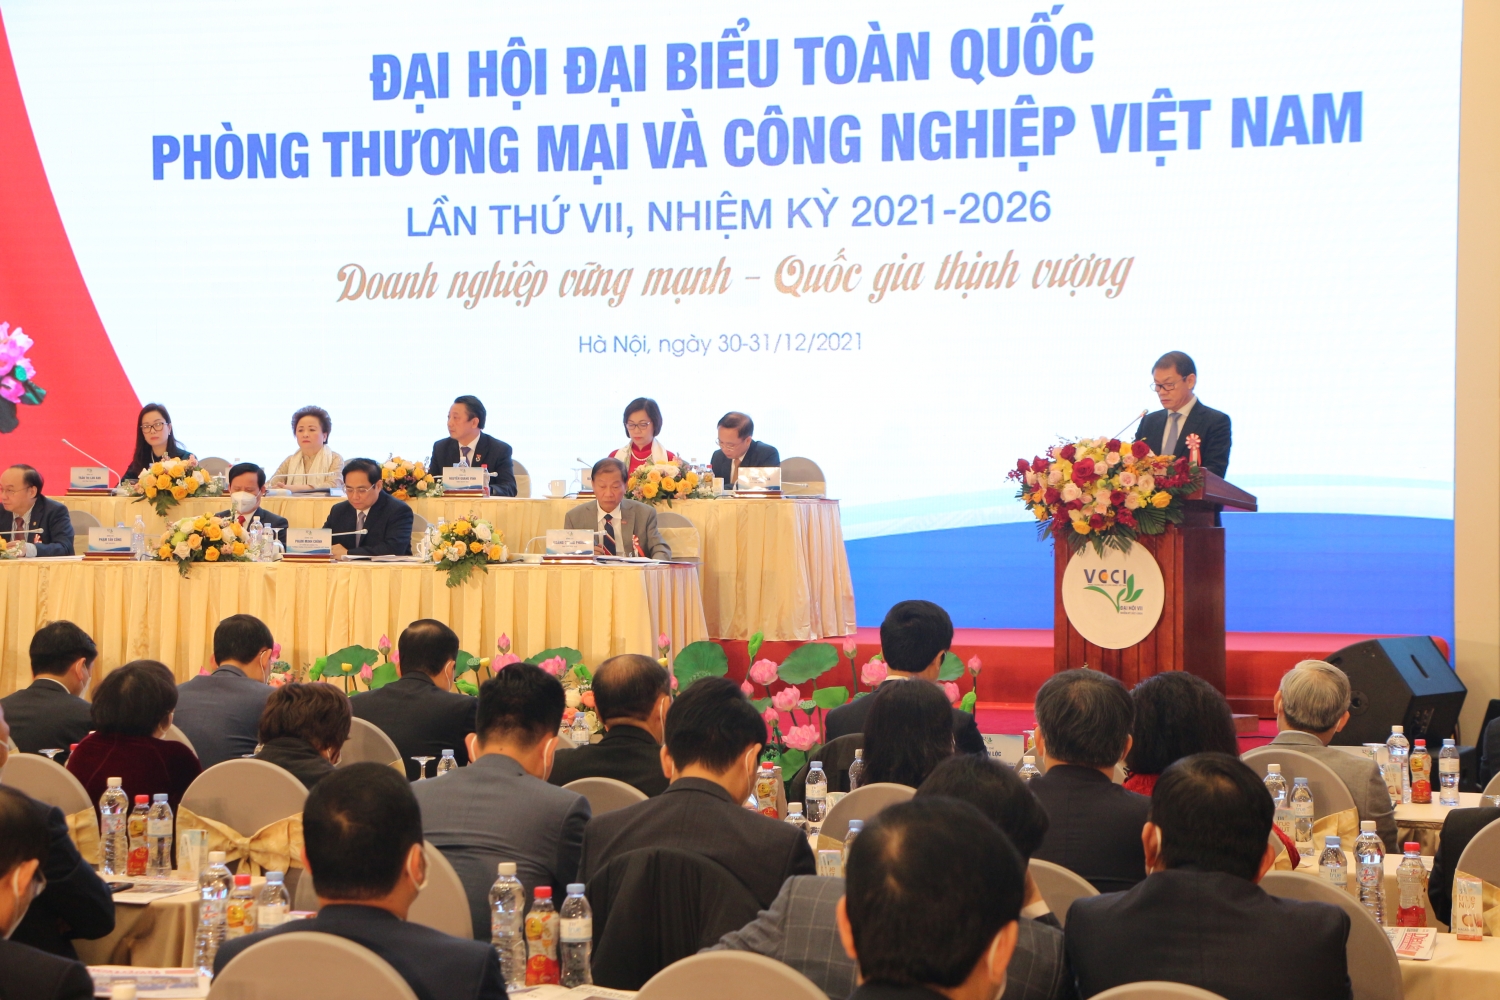 Chủ tịch HĐQT THACO - ông Trần Bá Dương được bầu làm Phó Chủ tịch Liên đoàn Thương Mại và Công Nghiệp Việt Nam (VCCI) khóa VII, nhiệm kỳ 2021-2026